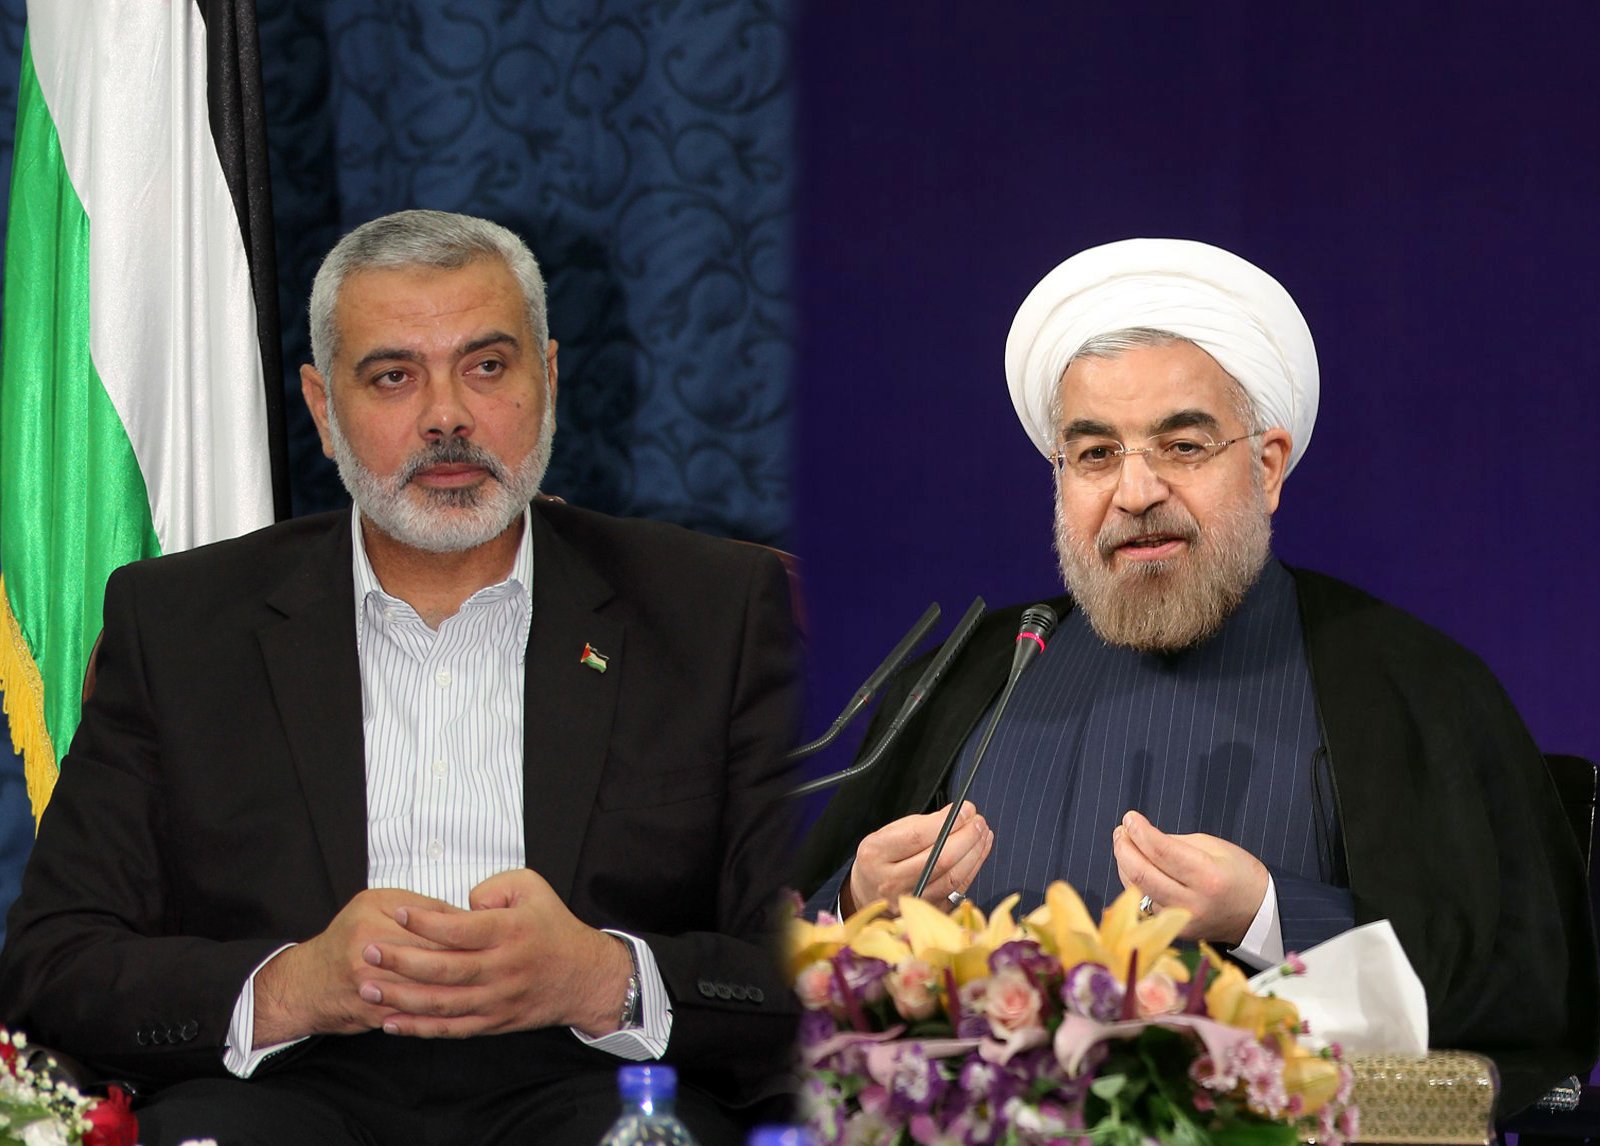  الرئيس الإيراني حسن روحاني ونائب رئيس المكتب السياسي لحماس إسماعيل هنية